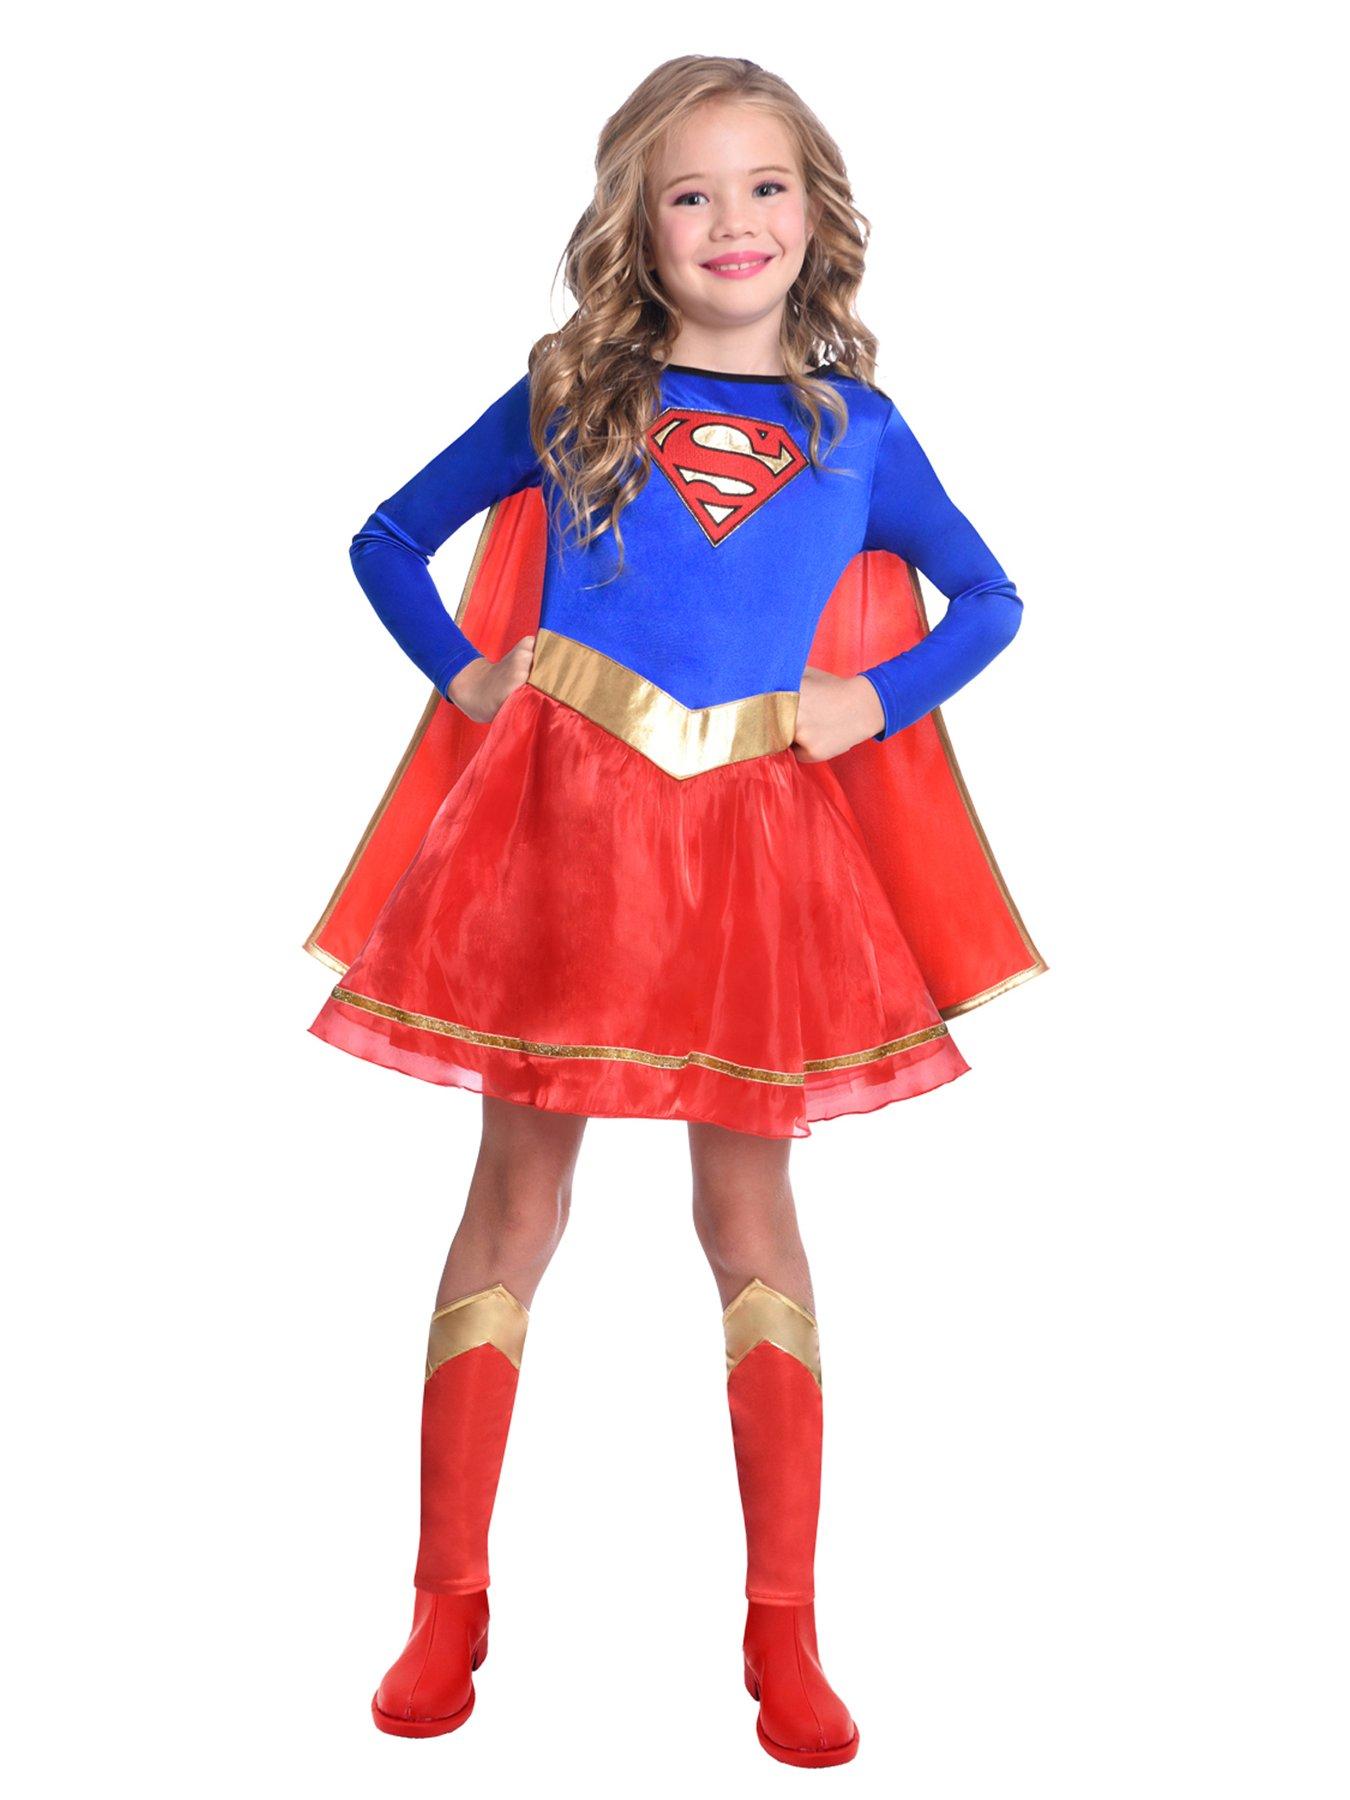 Supergirl Underoos Set  Supergirl, Underoos, Spandex outfits